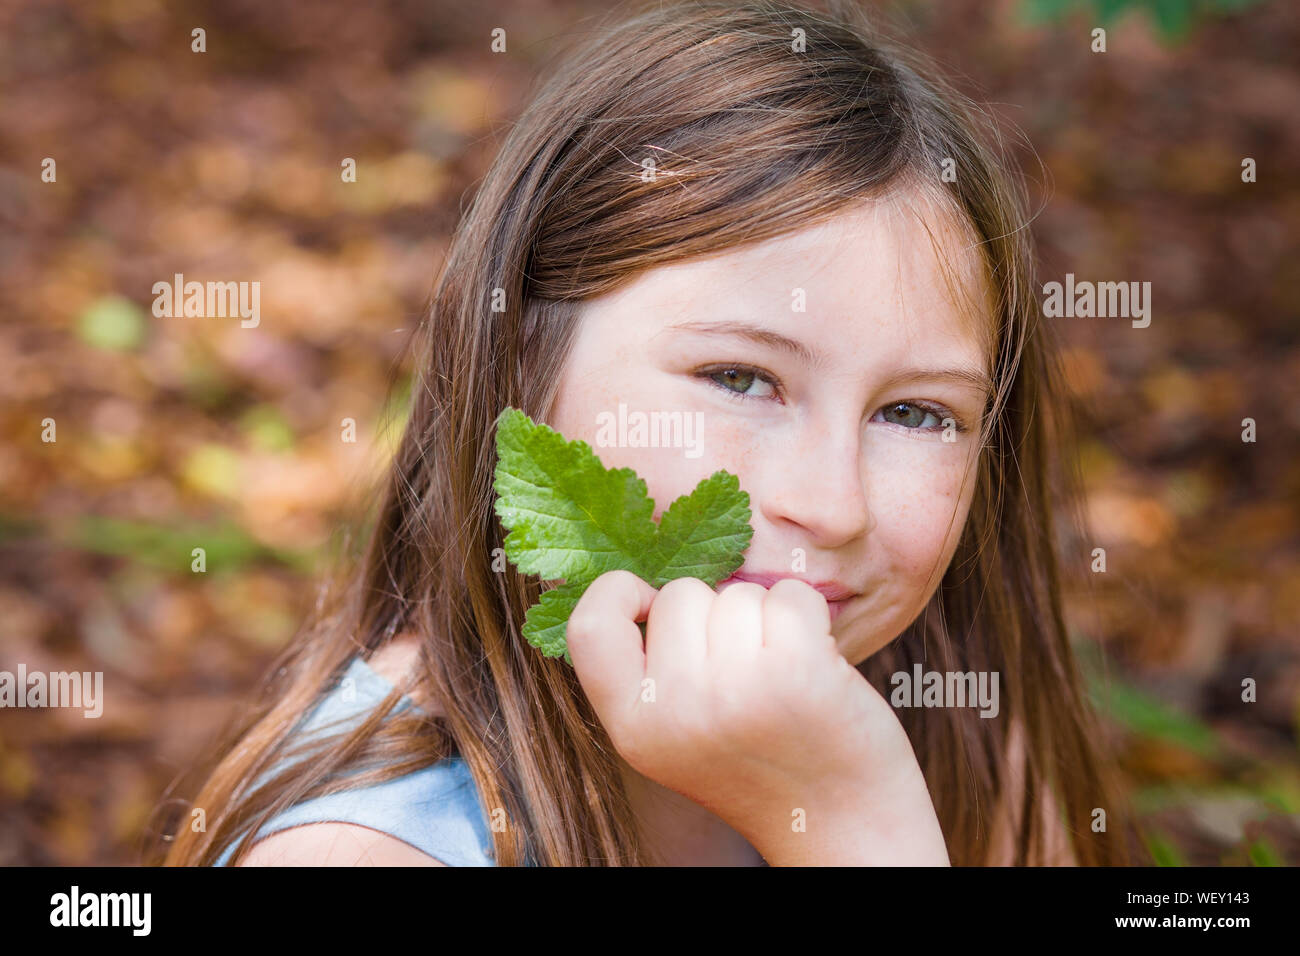 Ritratto di una ragazza con lunghi capelli castani, sorridente nella fotocamera e tenendo una foglia, in una foresta con autunno fogliame colorato in background, in Sonoma Foto Stock